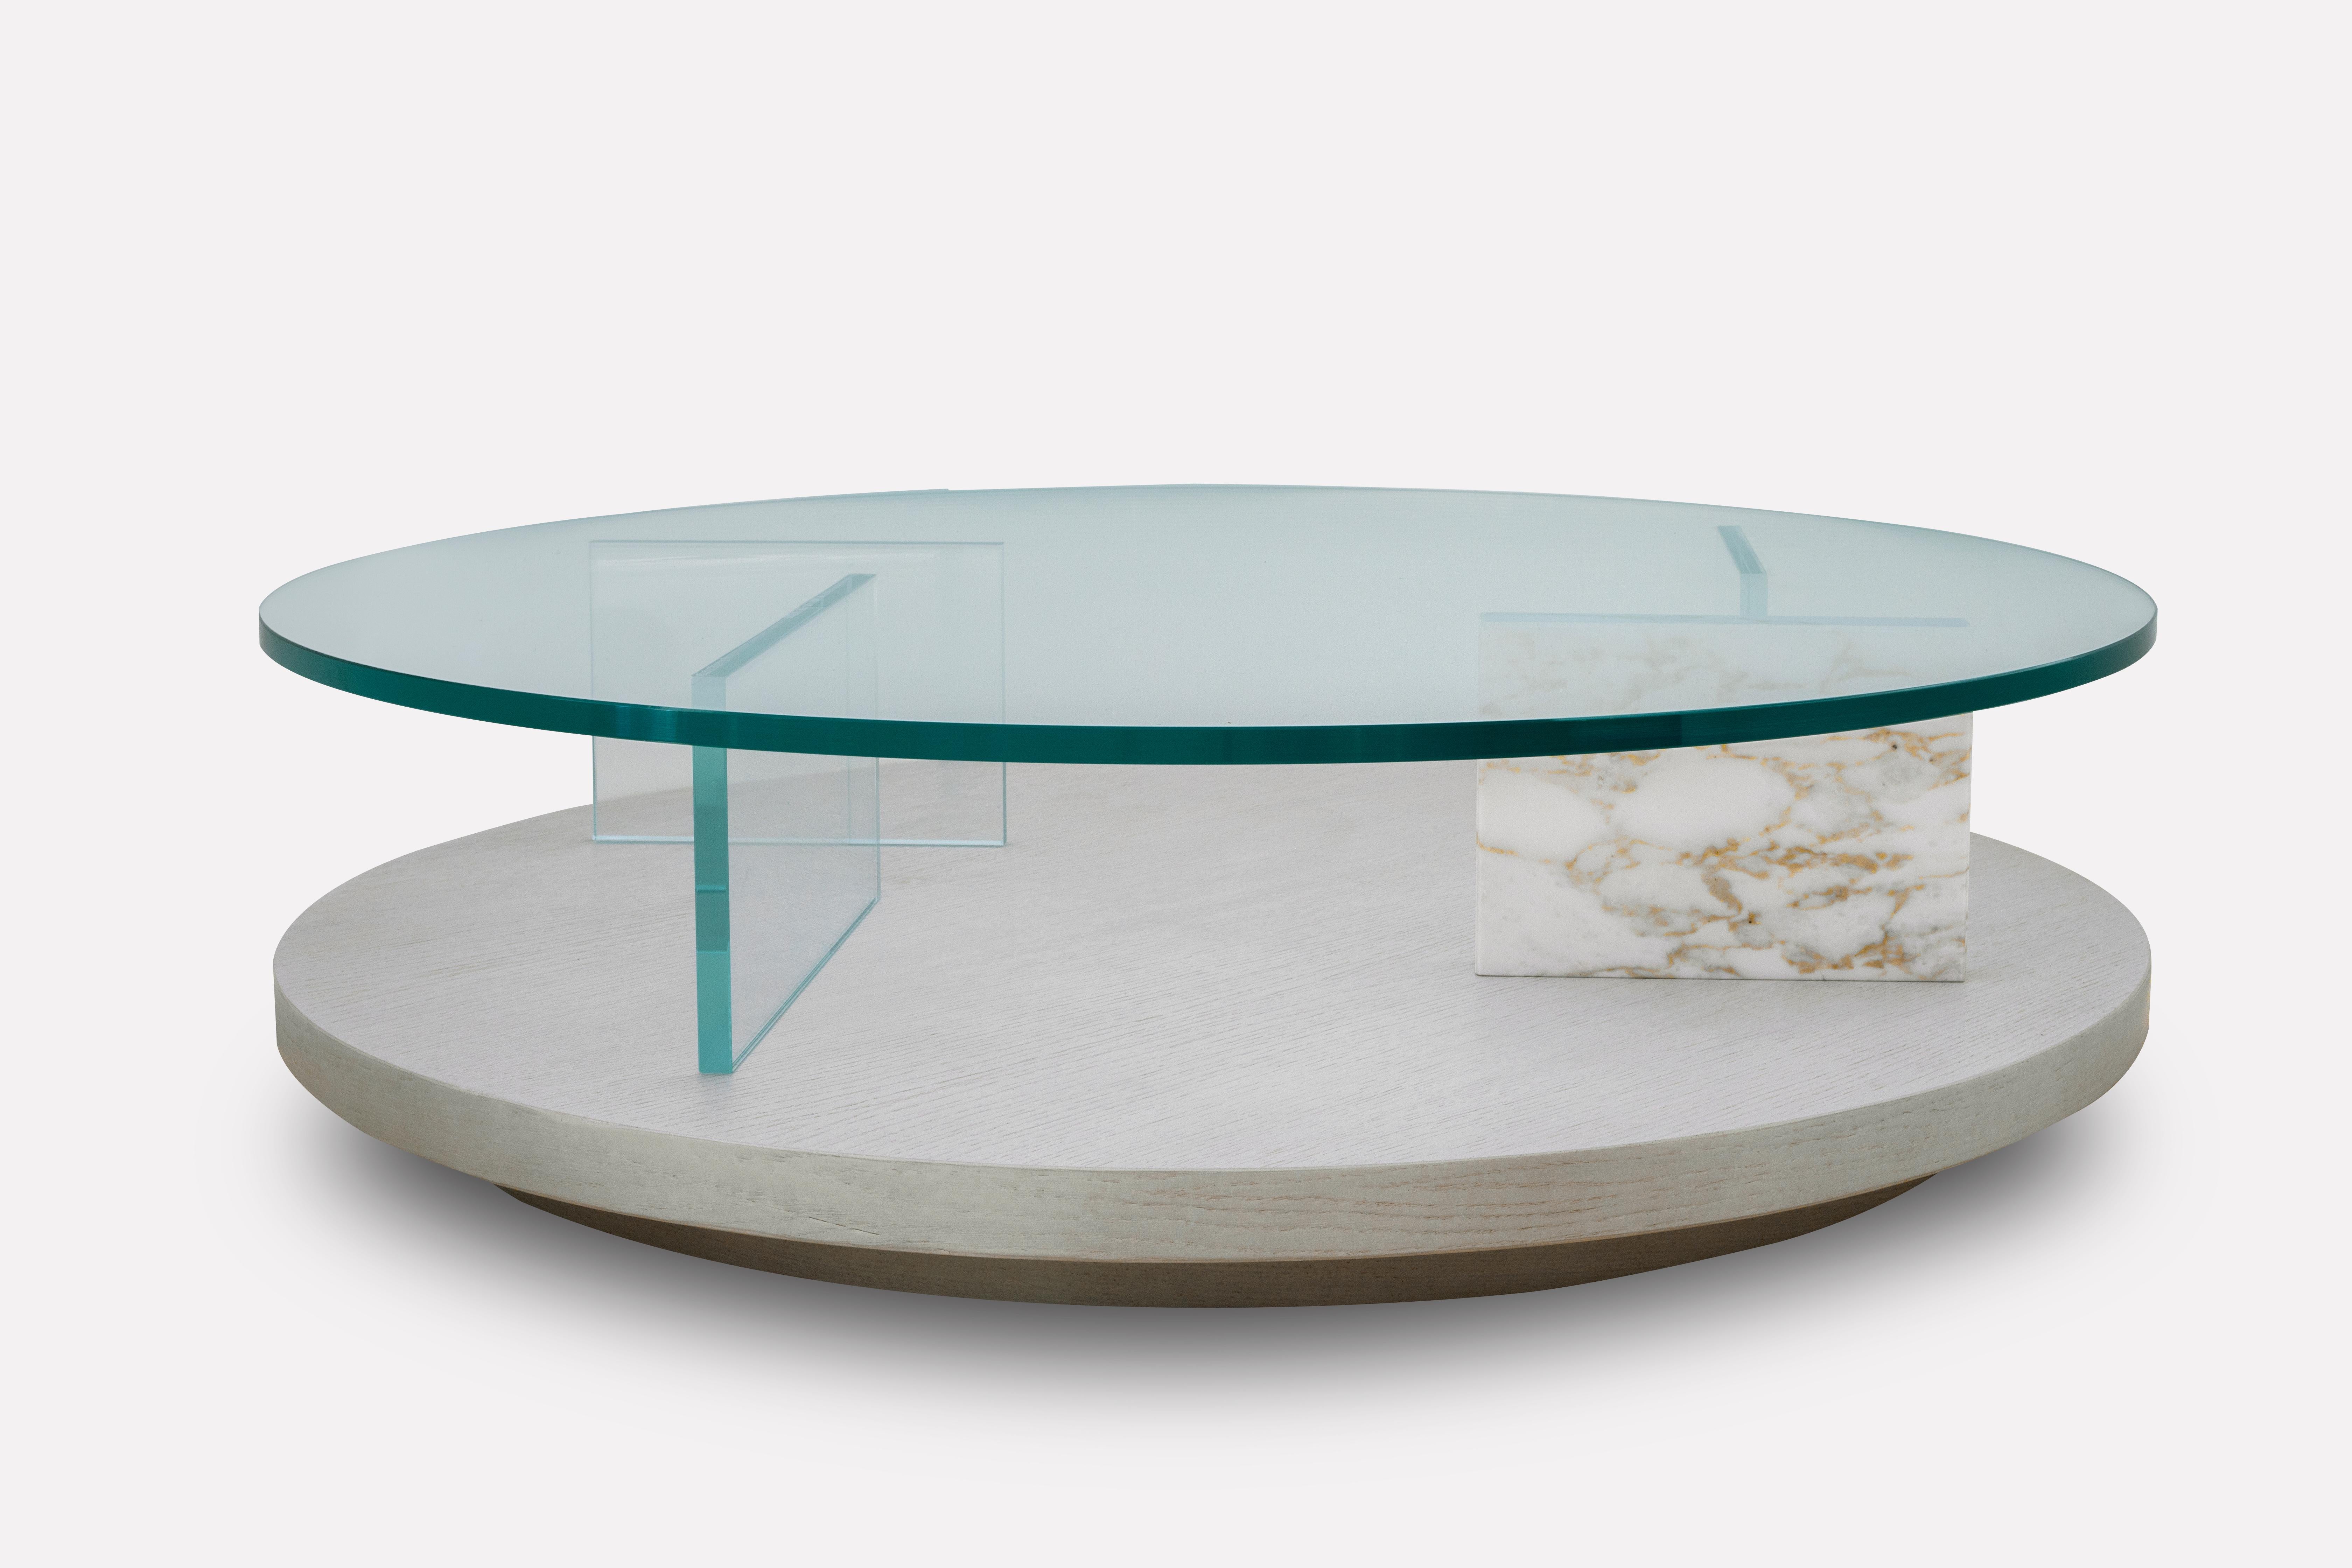 Le design clair et puriste de la table basse PURO suit une approche moderne qui met en valeur la combinaison du bois et du verre avec un séparateur protagoniste en marbre italien.

Tel que montré Bois : Chêne blanc laiteux Verre : Clair Marbre :